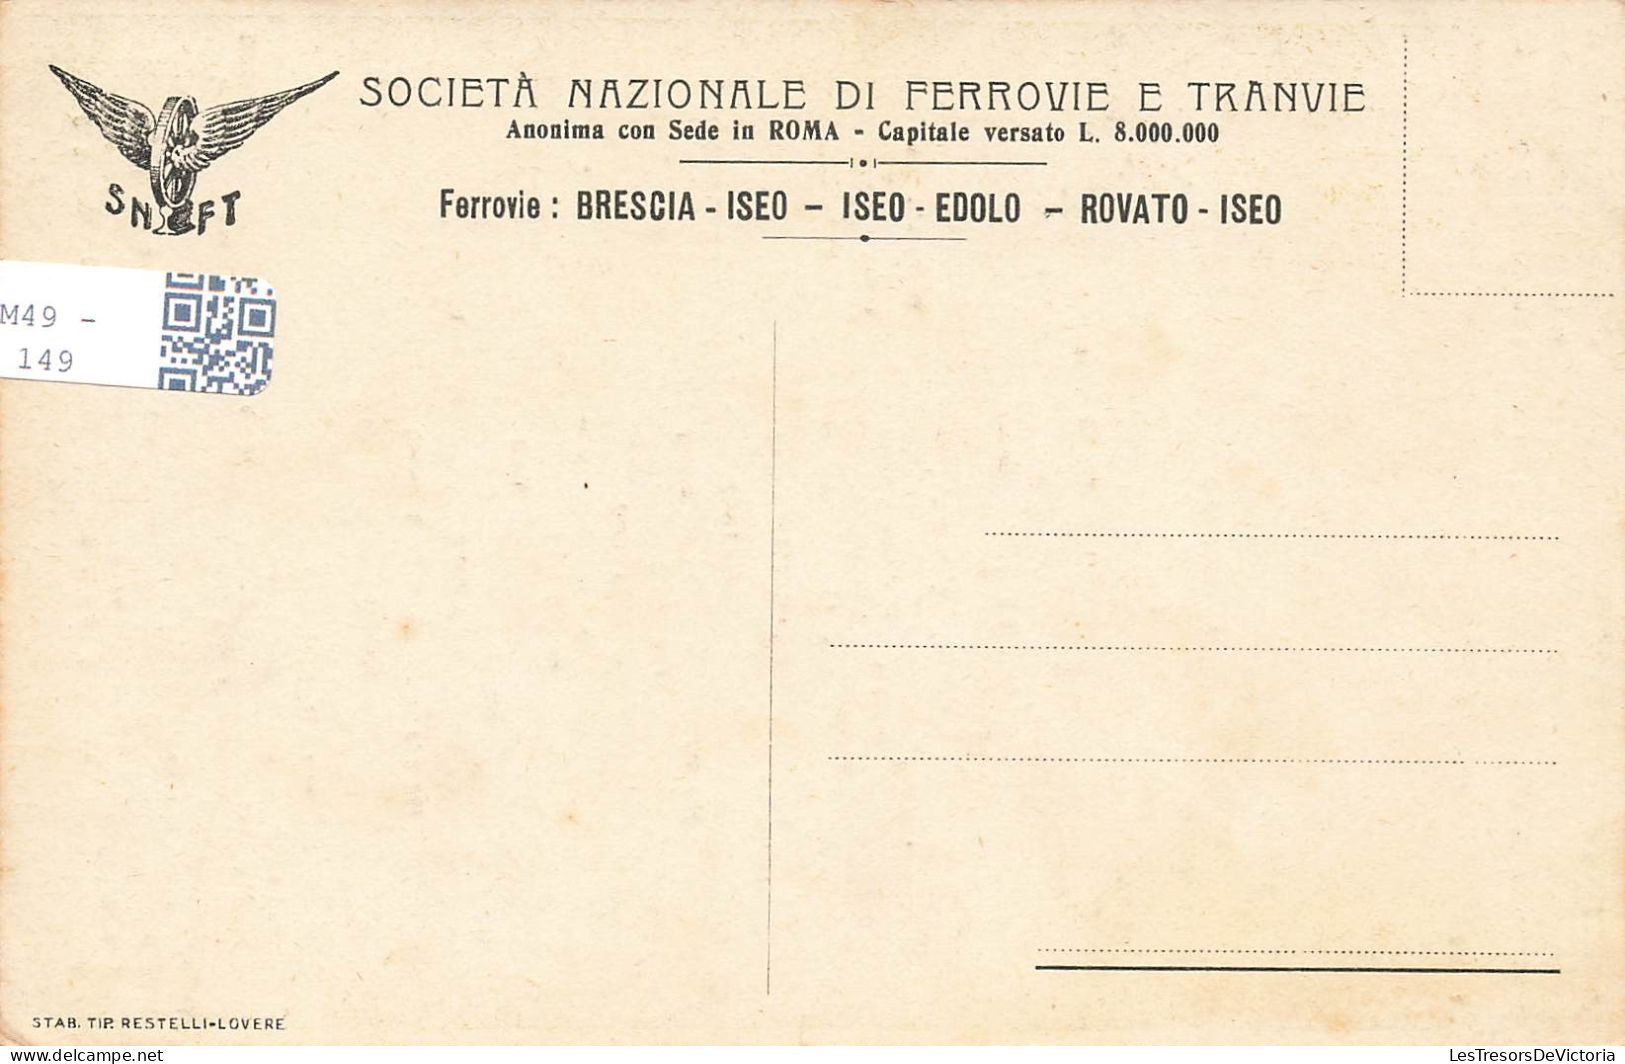 CARTES GEOGRAPHIQUES - Ferrovie - Brescia Iseo - Colorisé - Carte Postale Ancienne - Maps